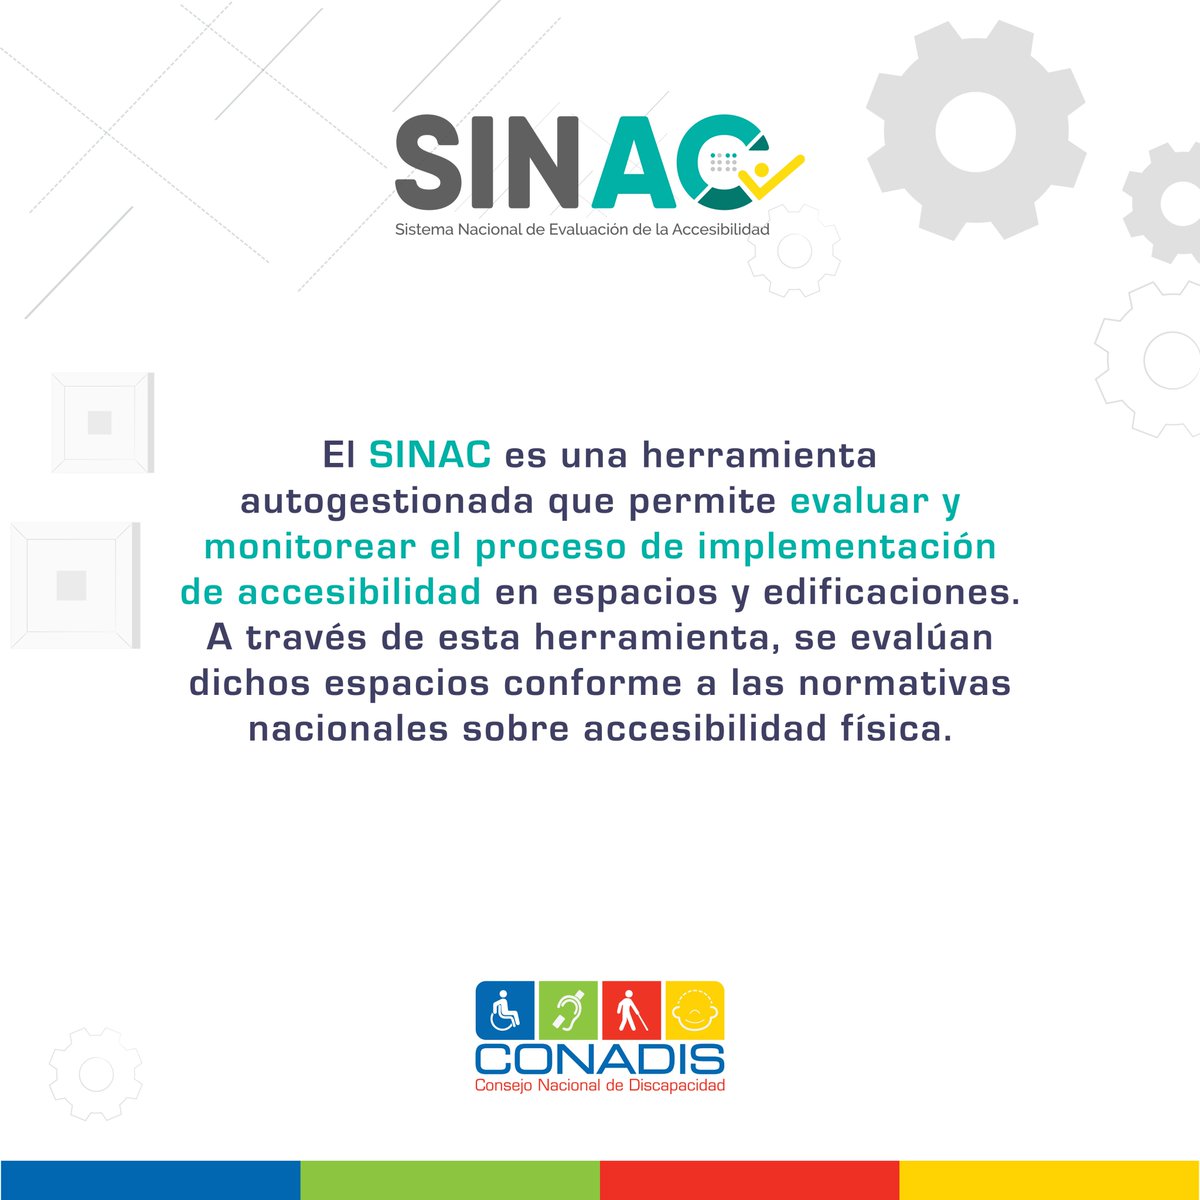 ¿Conoces el Sistema Nacional de Evaluación de la Accesibilidad (SINAC)❓ Es una herramienta autogestionada que permite evaluar y monitorear el proceso de implementación de accesibilidad en espacios y edificaciones. 📲 Disponible para descargar la aplicación en Android.